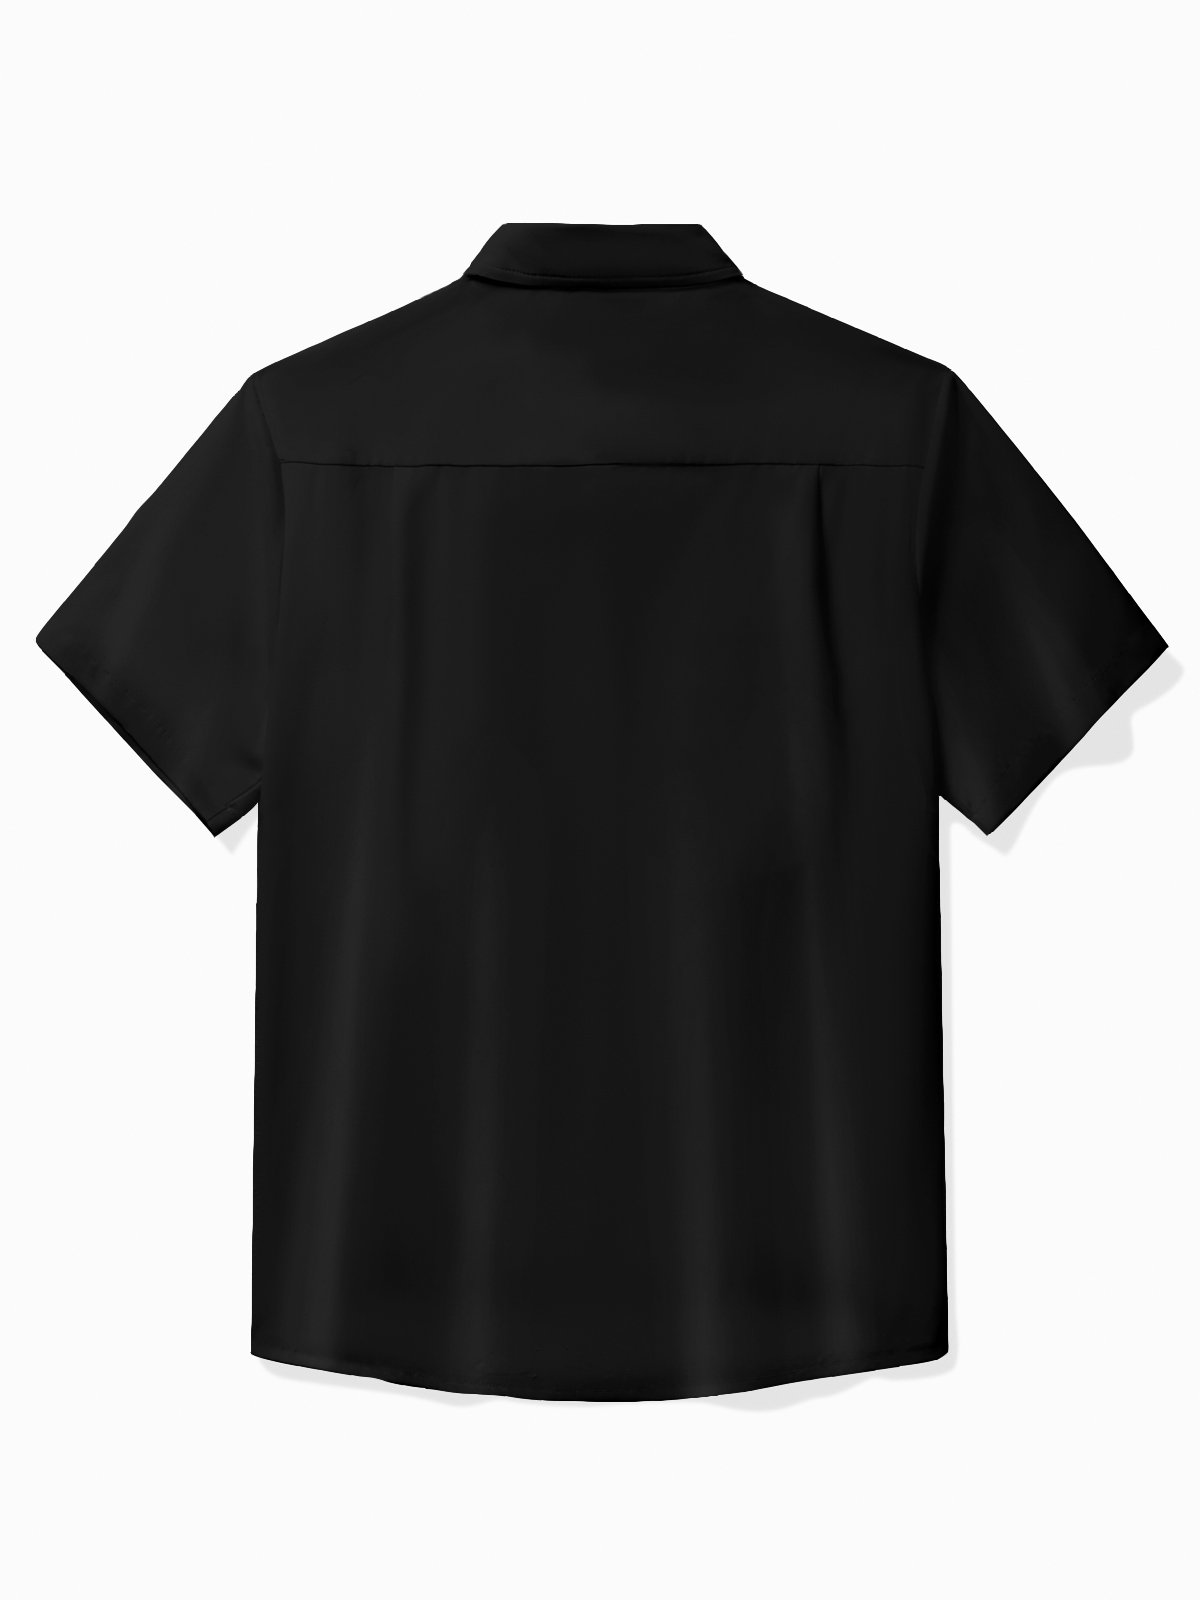 Royaura® Vintage Bowling Mens "Shit Show Supervisor" Printed Shirt Pocket Camping Shirt